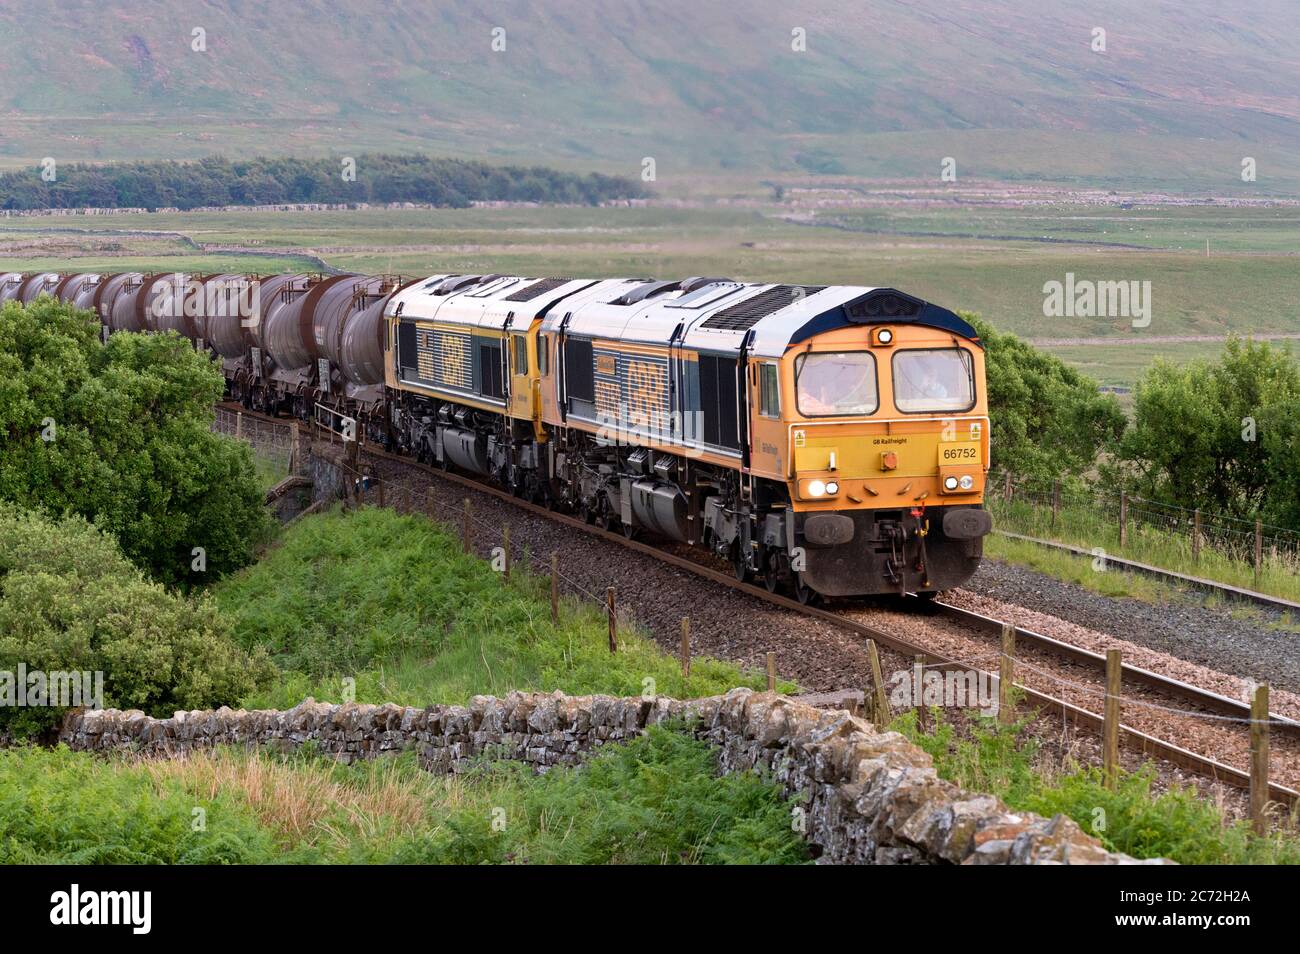 Un tren de carga por la noche, arrastrado por dos locomotoras diésel clase 66, se dirige al norte a Carlisle, Blea Moor, tren Settle-Carlisle, North Yorkshire, Reino Unido Foto de stock